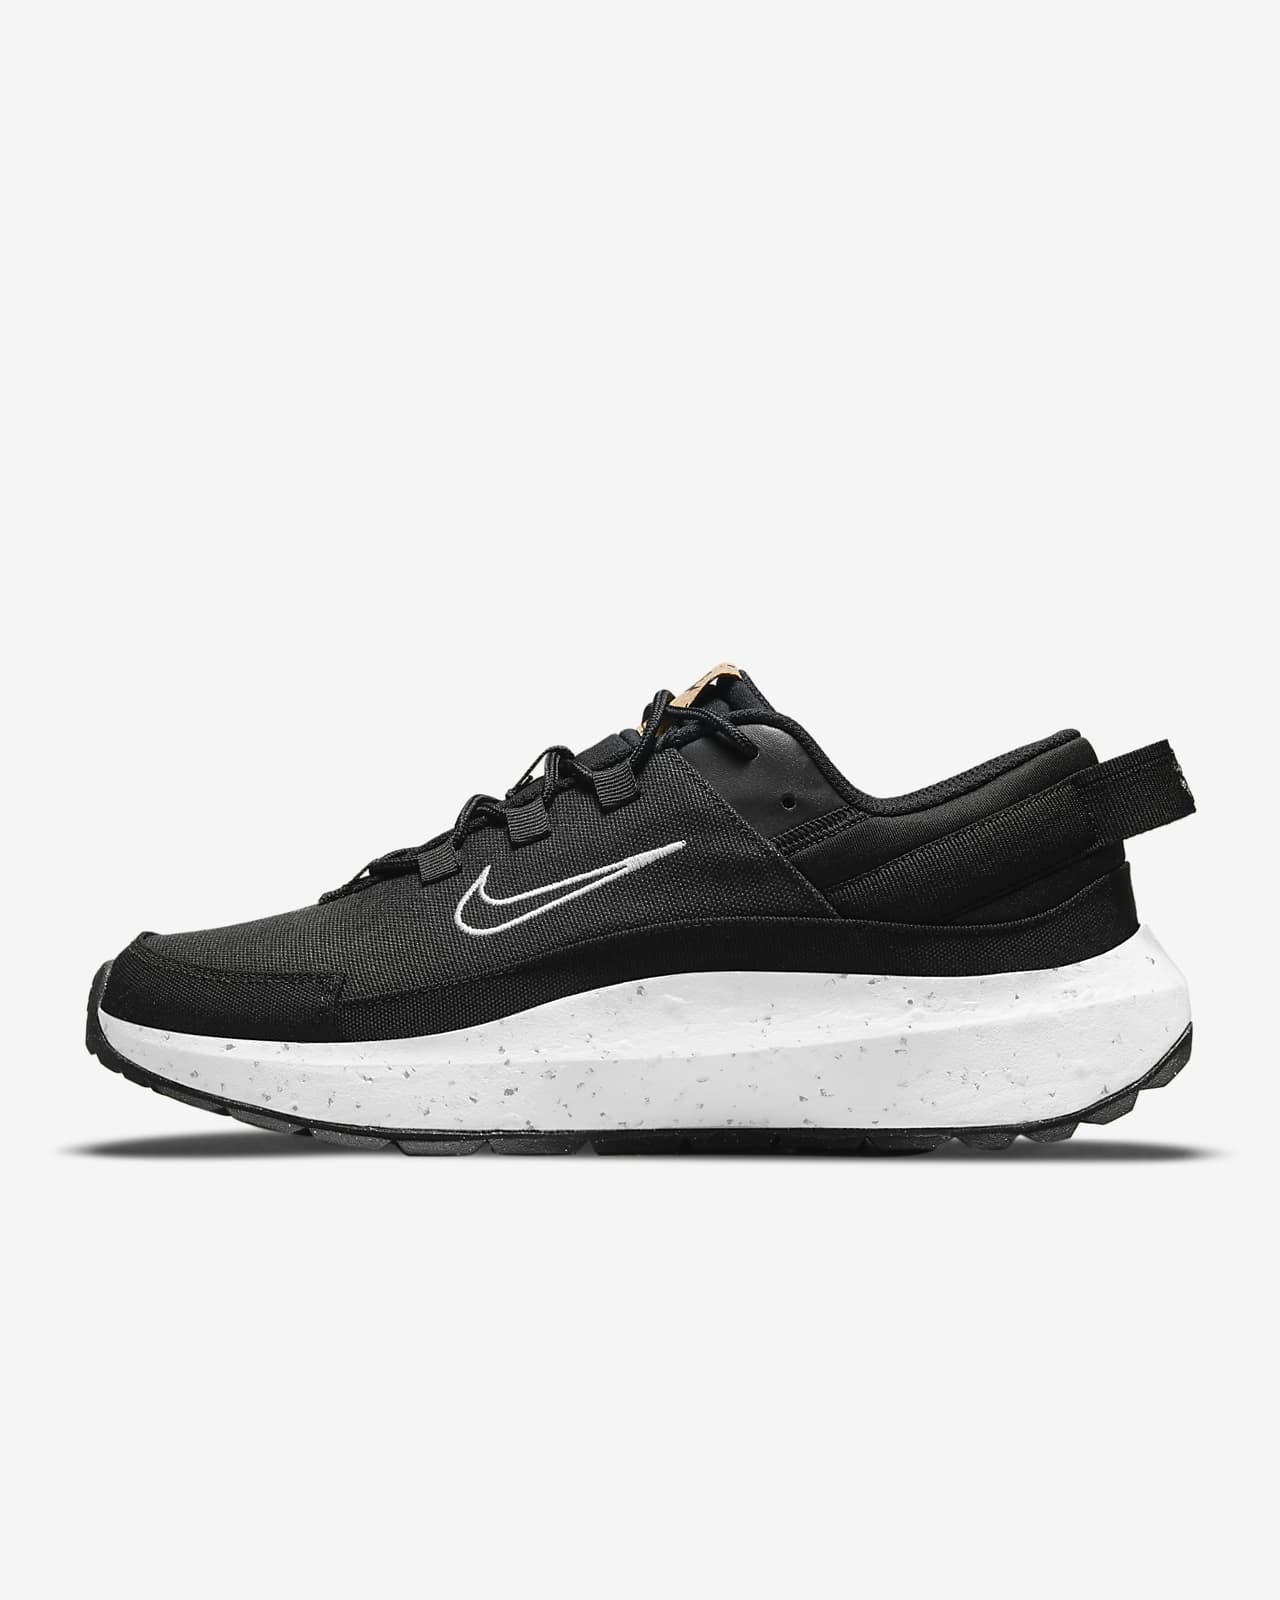 Nike Crater Remixa Women's Shoe